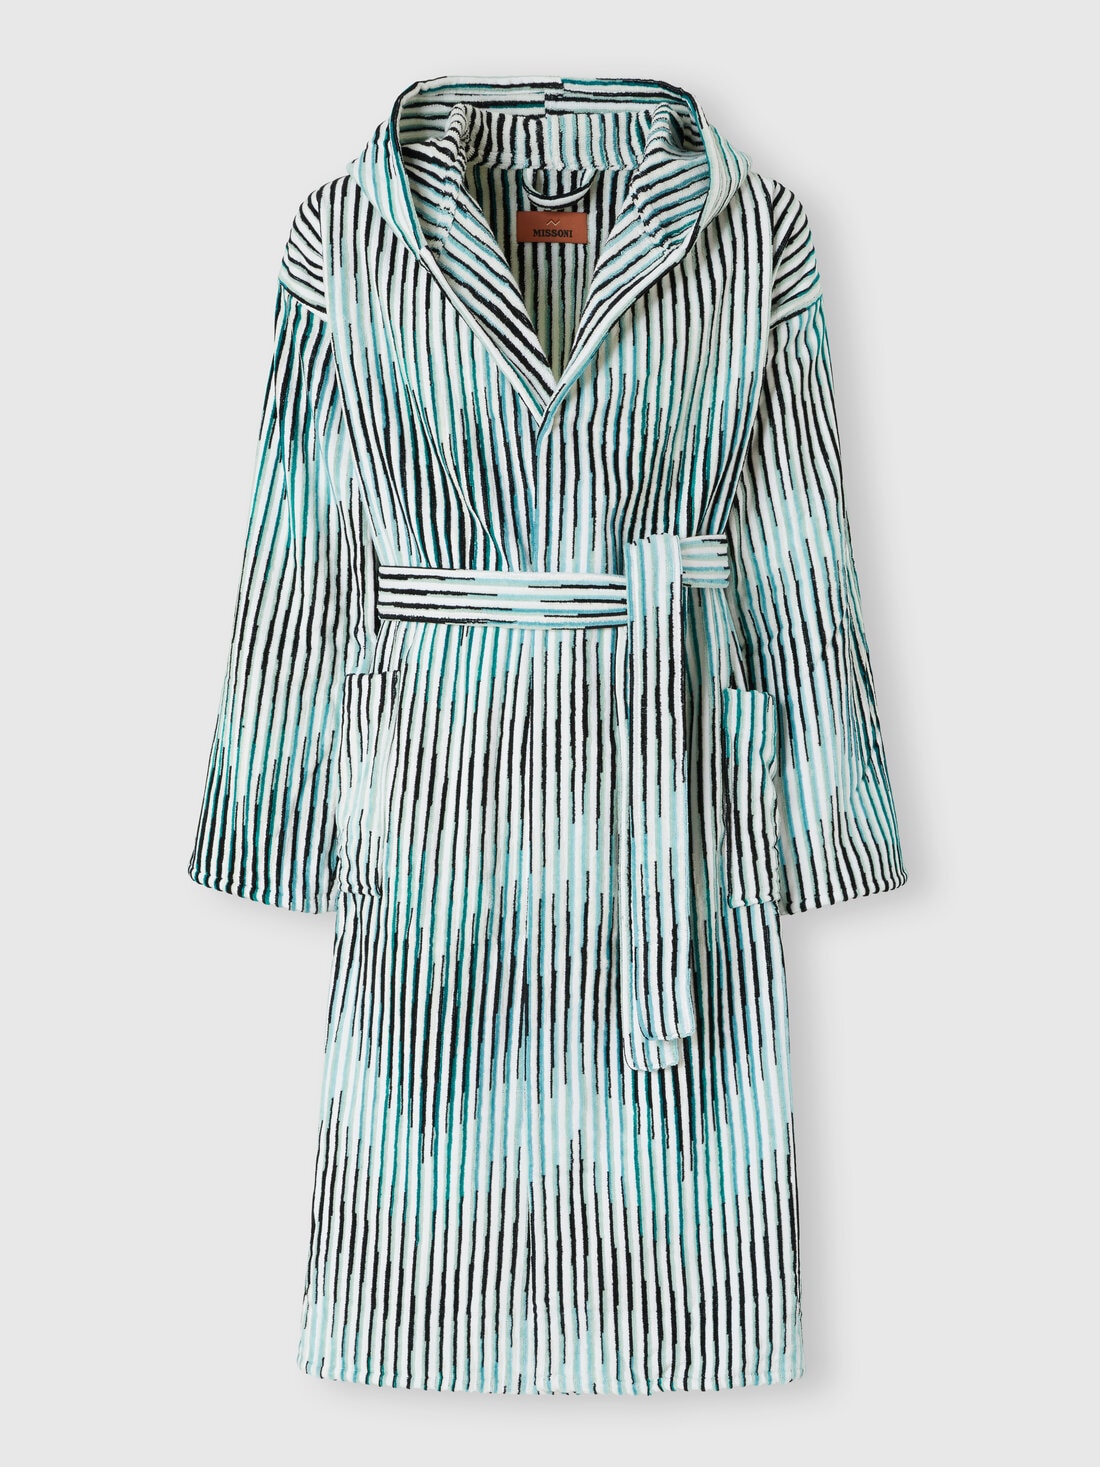 Arpeggio bathrobe in slub cotton terry, Turquoise  - 1D3AC99707701 - 0